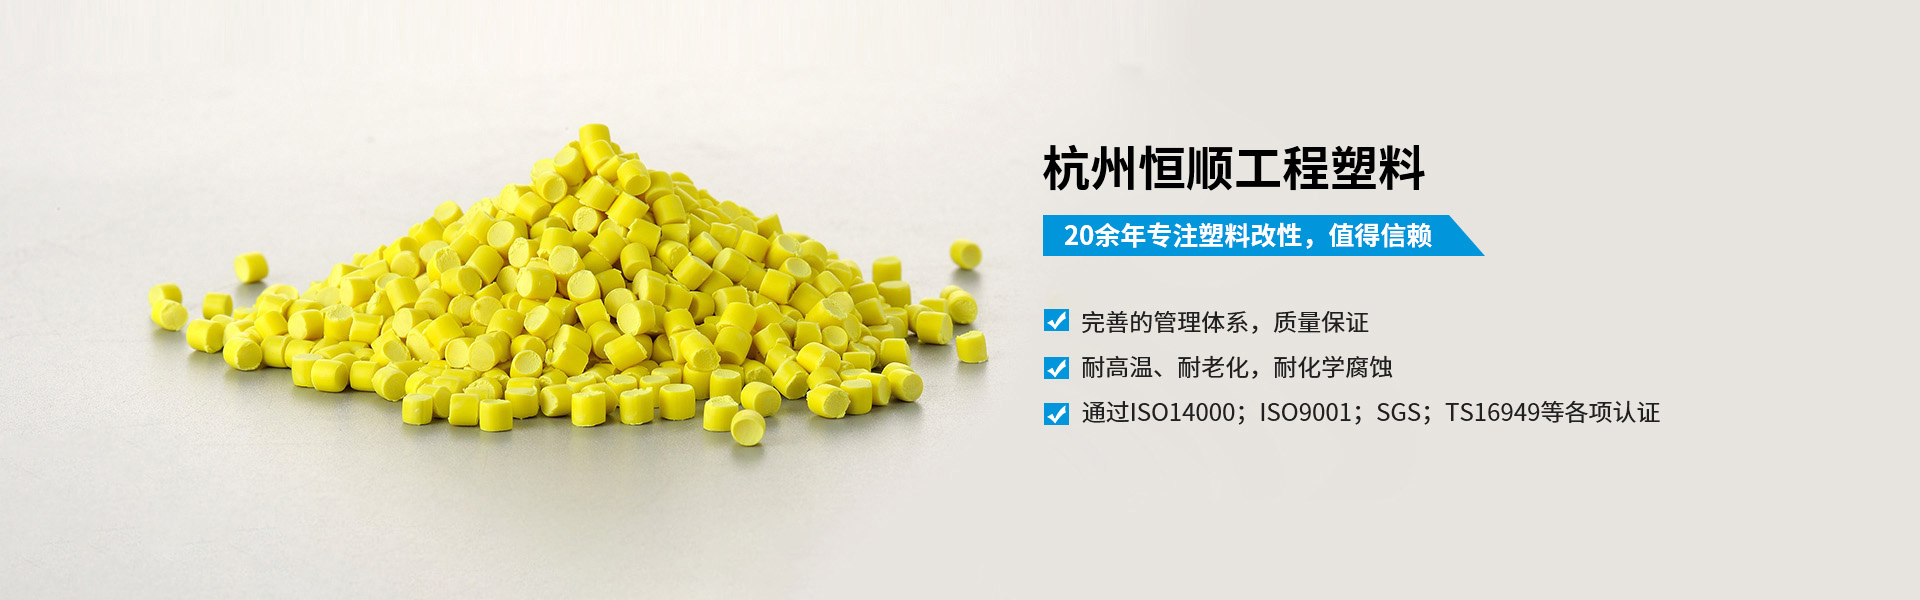 杭州恒顺工程塑料有限公司